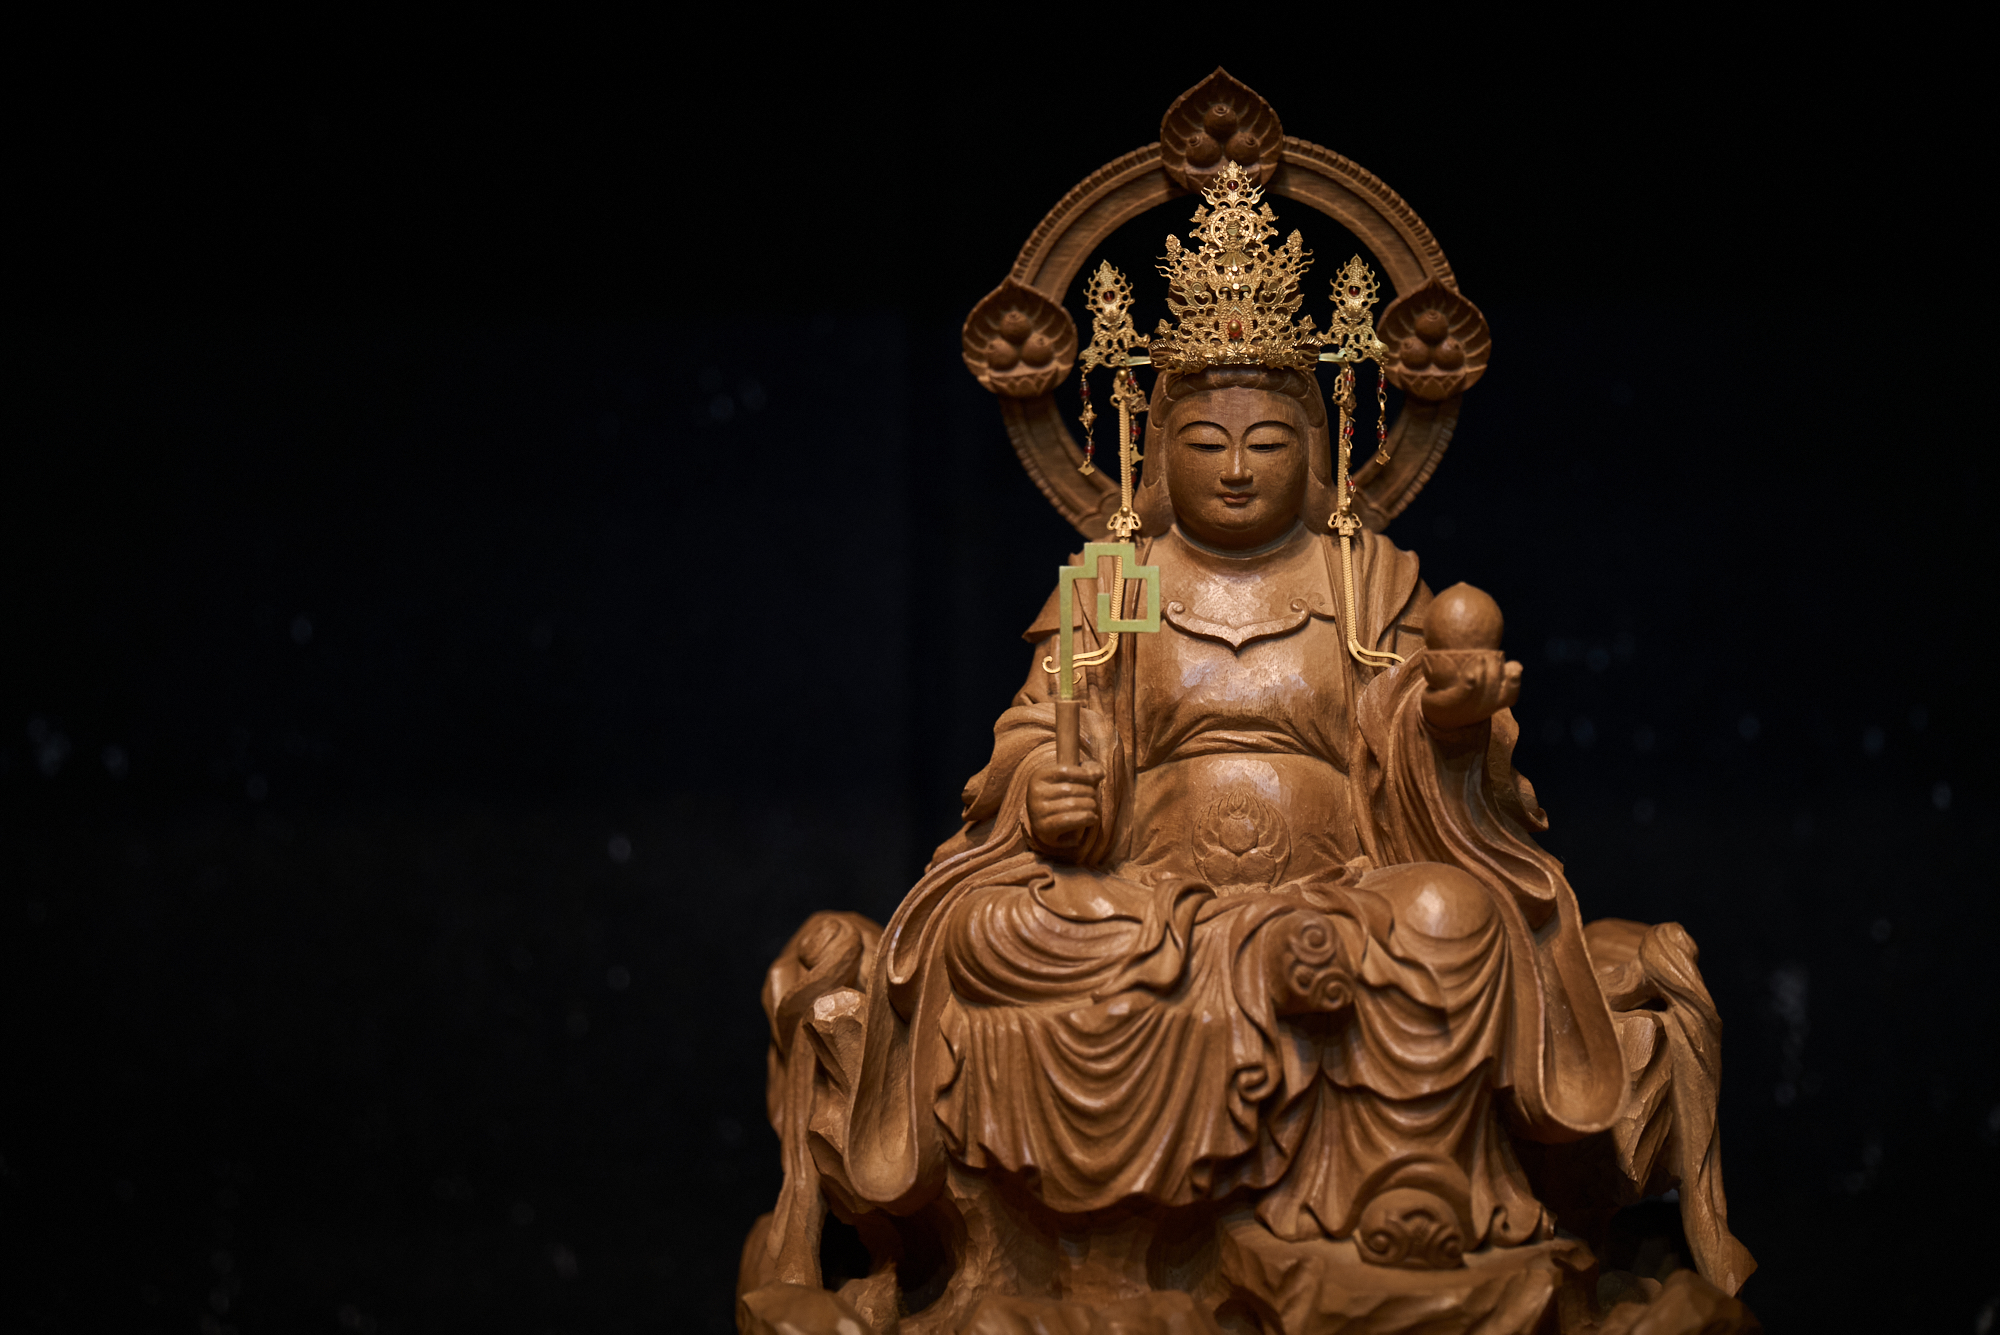 柔和な表情の地蔵菩薩像。表面の彫り痕に手彫りの温もりが感じられます。